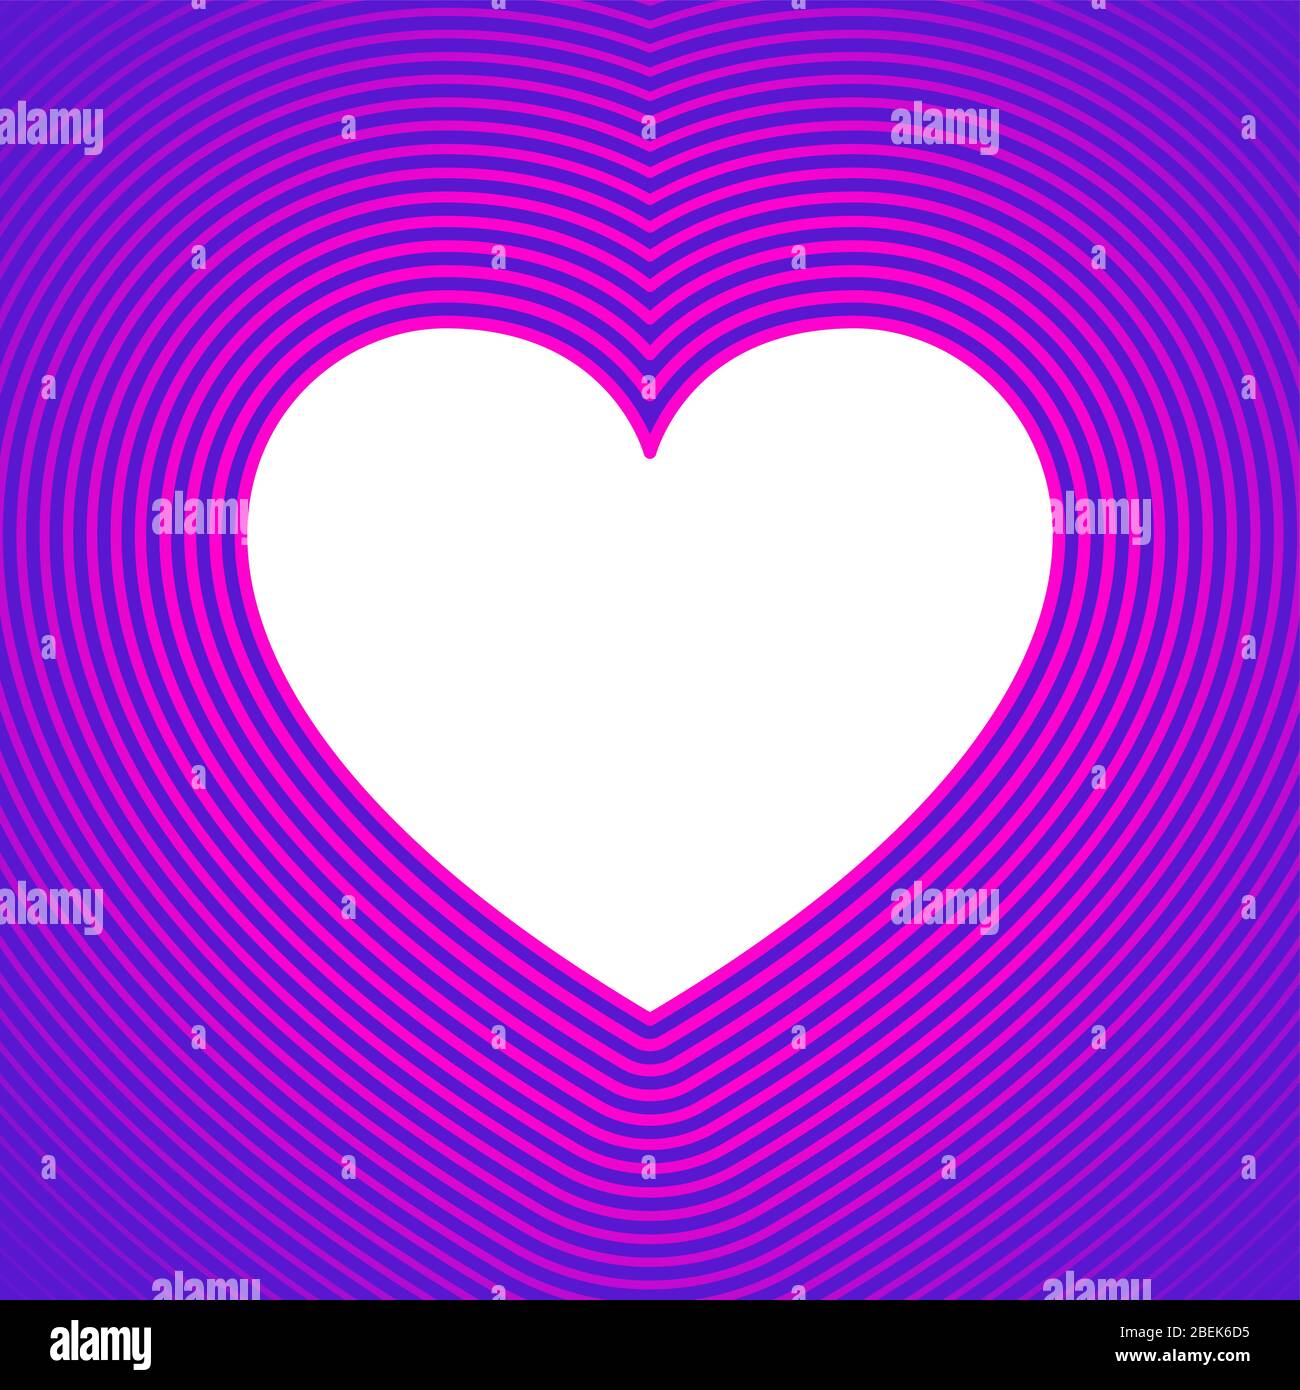 Simbolo a cuore bianco con linee di offset rosa su sfondo viola.modello da utilizzare come sfondo o per un biglietto di auguri. Forma del cuore per esprimere l'emozione Foto Stock